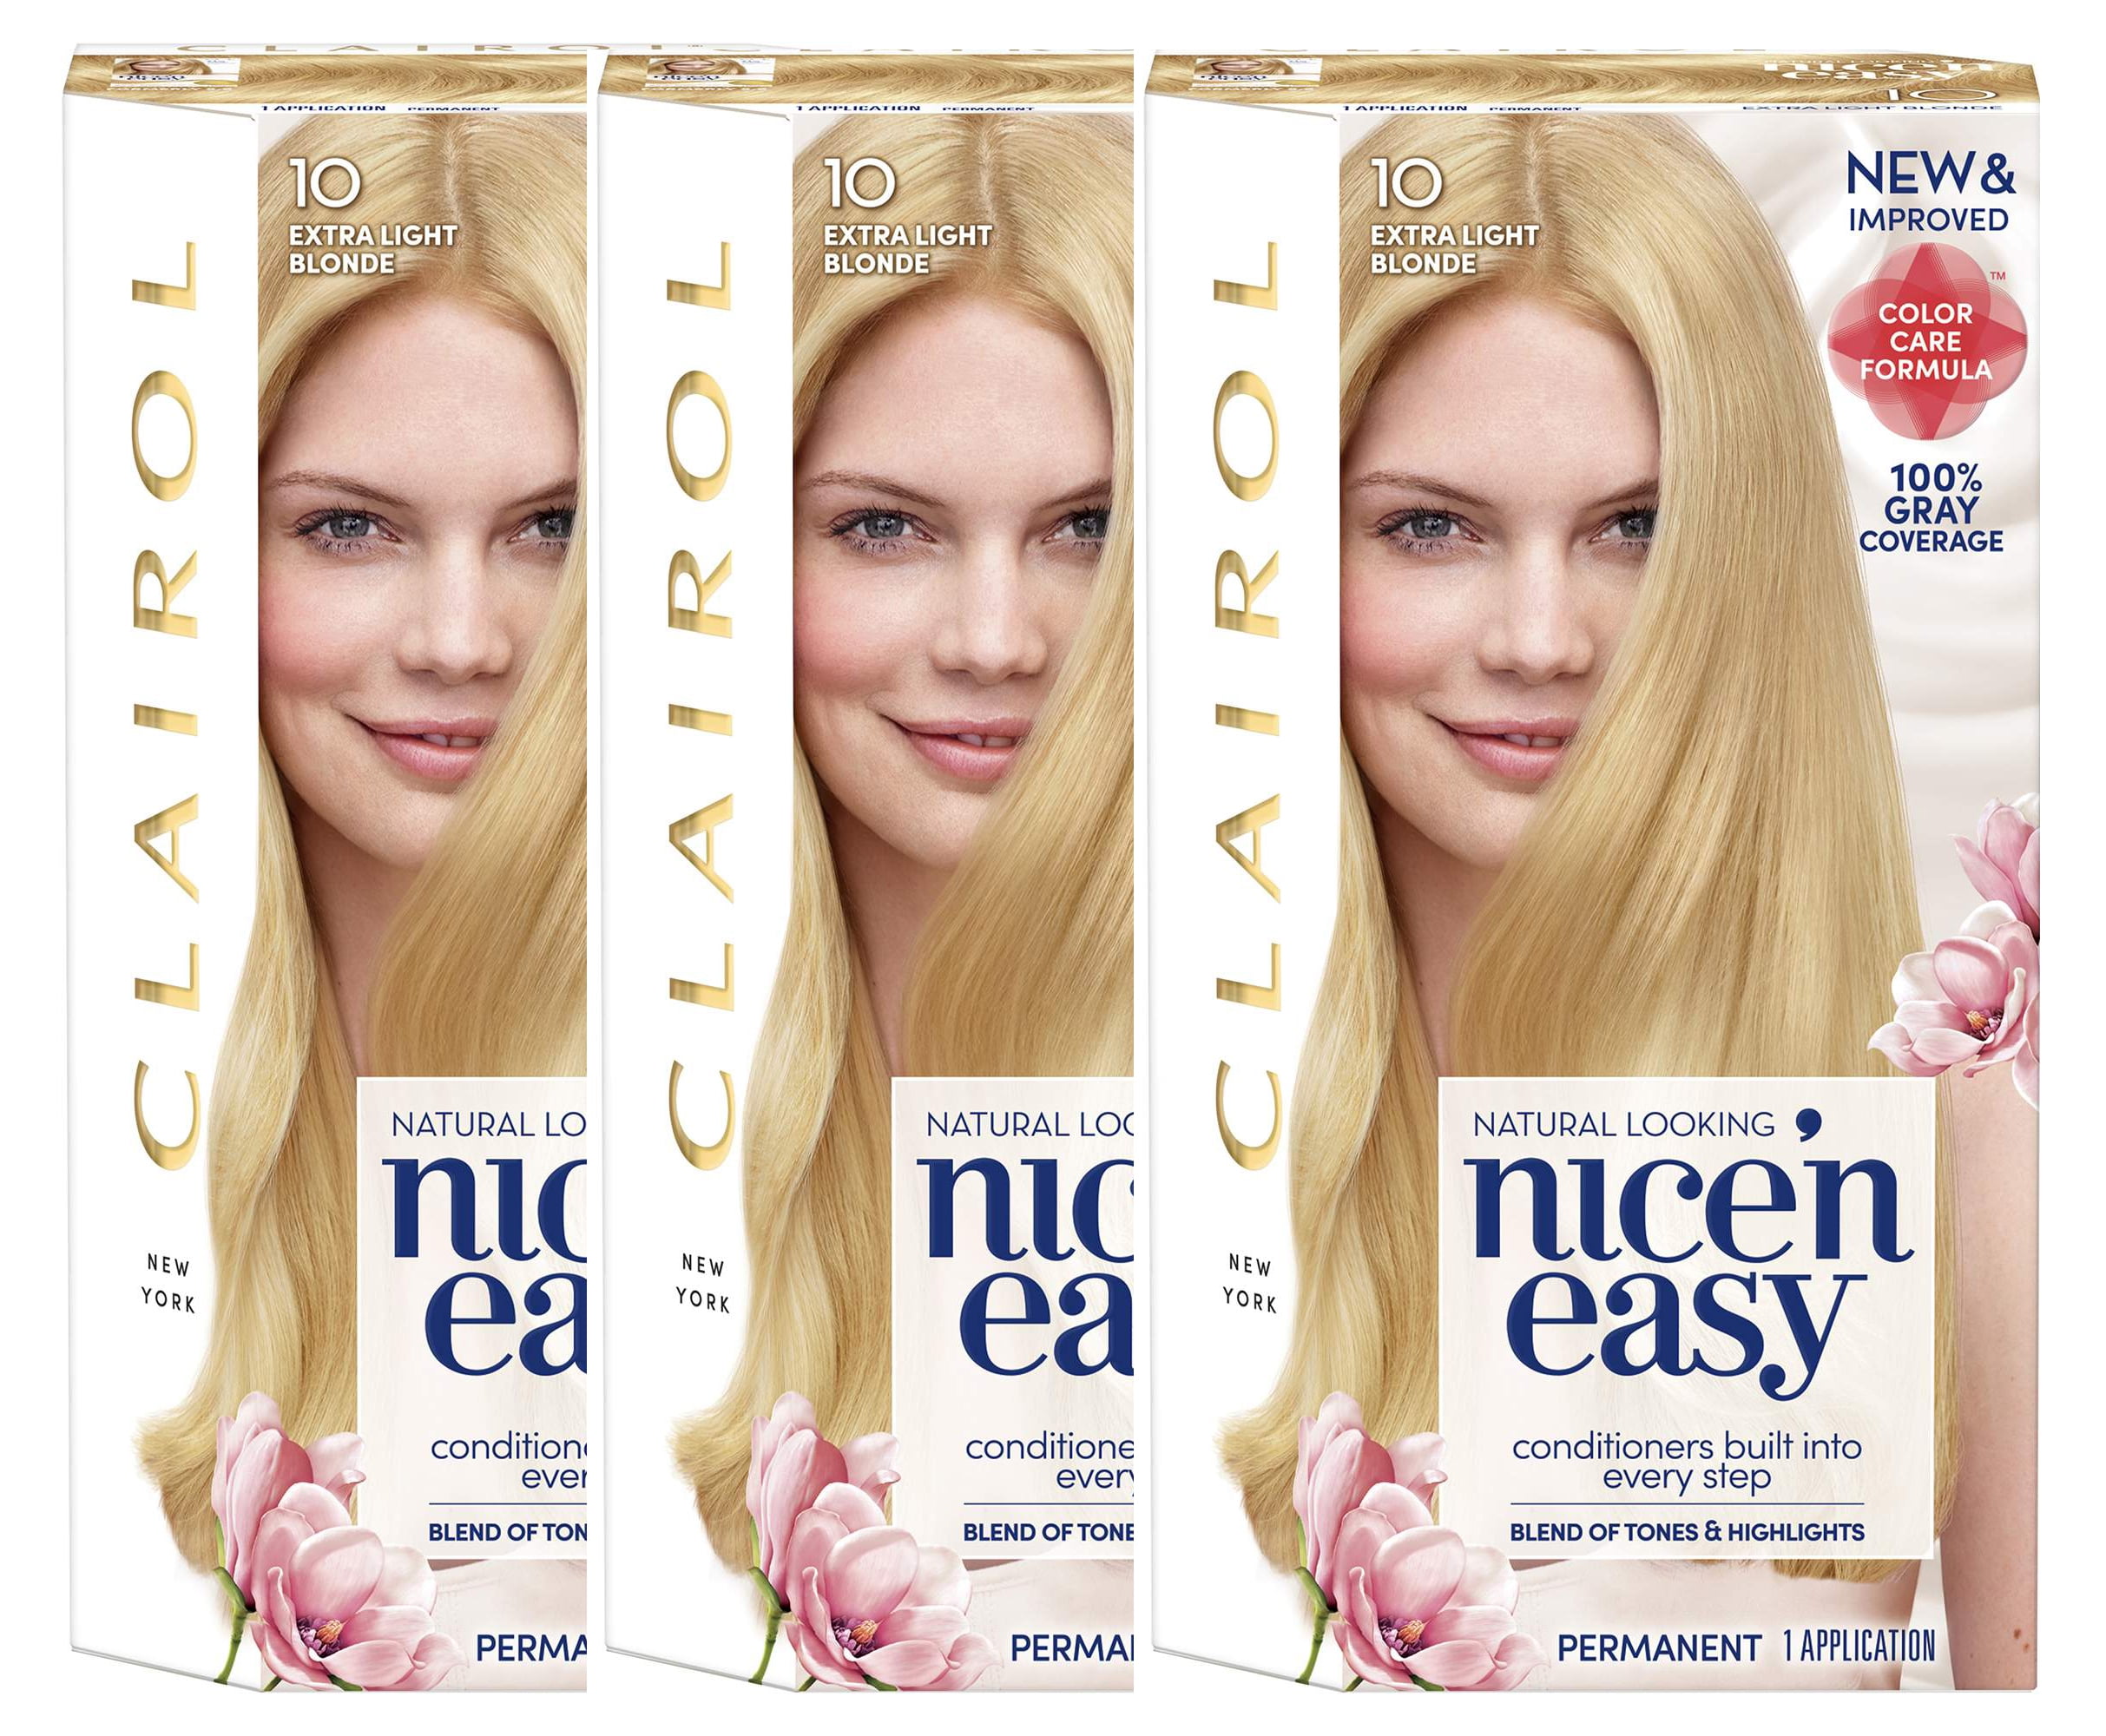 Clairol Nice'n Easy Permanent Hair Color, 6N Lightest Brown, Pack of 1 - wide 1